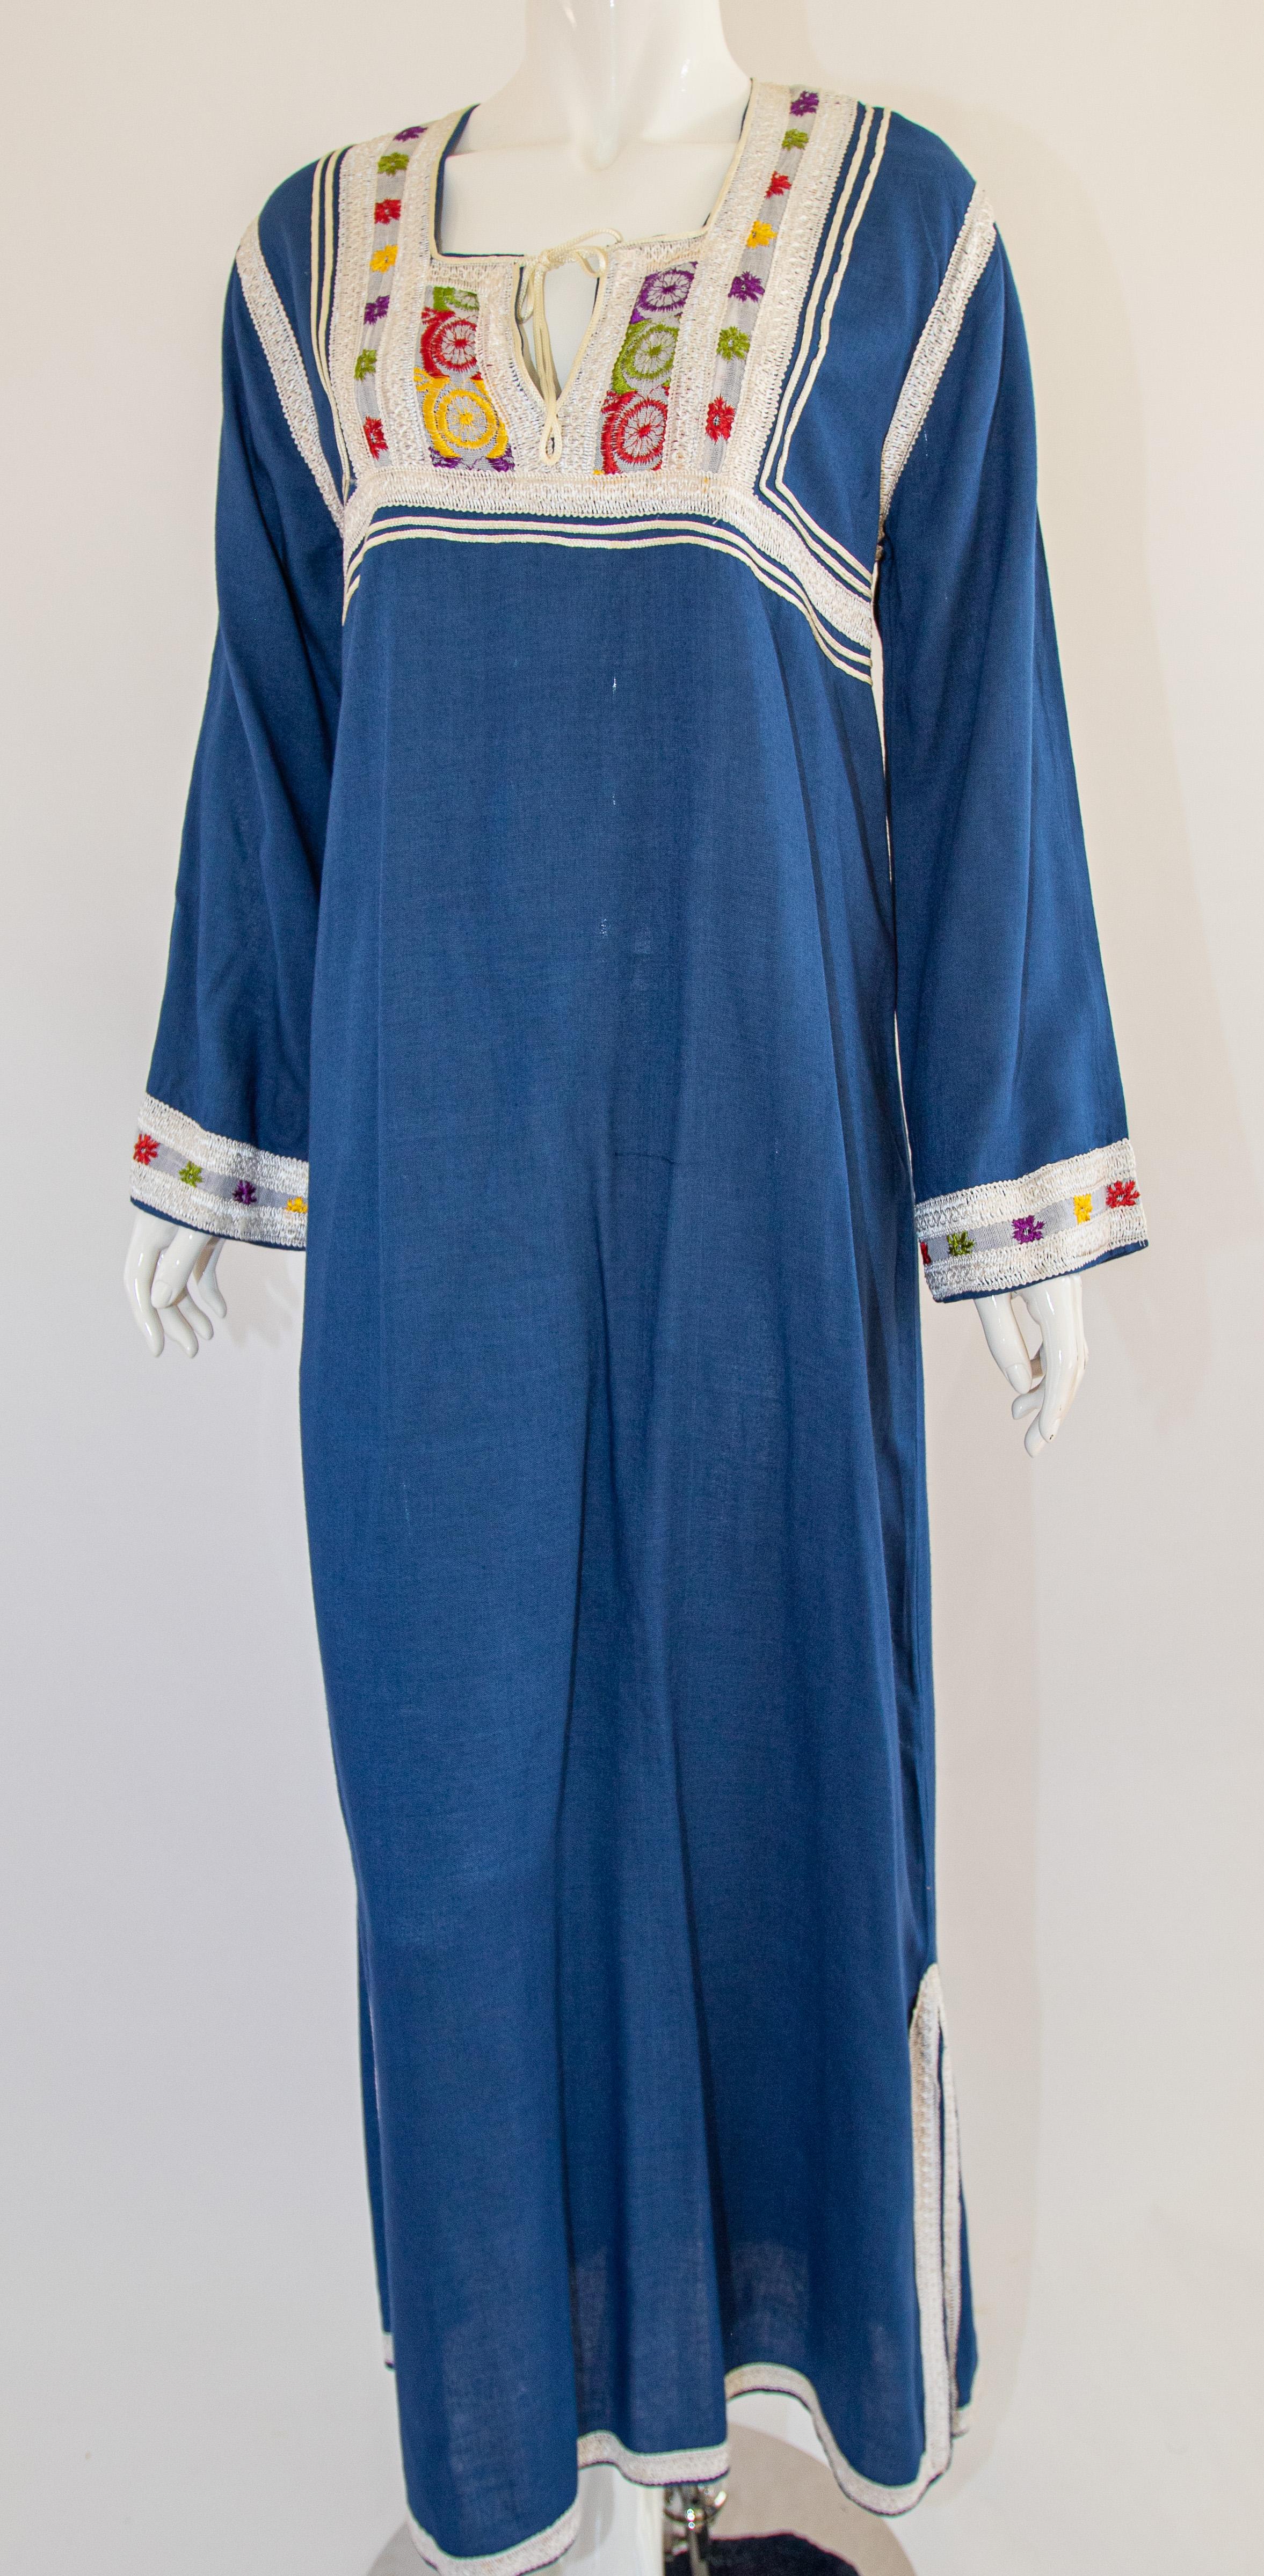 Moroccan Vintage Blue Caftan, 1970 Maxi Dress Kaftan by Glenn Boston Size M For Sale 7